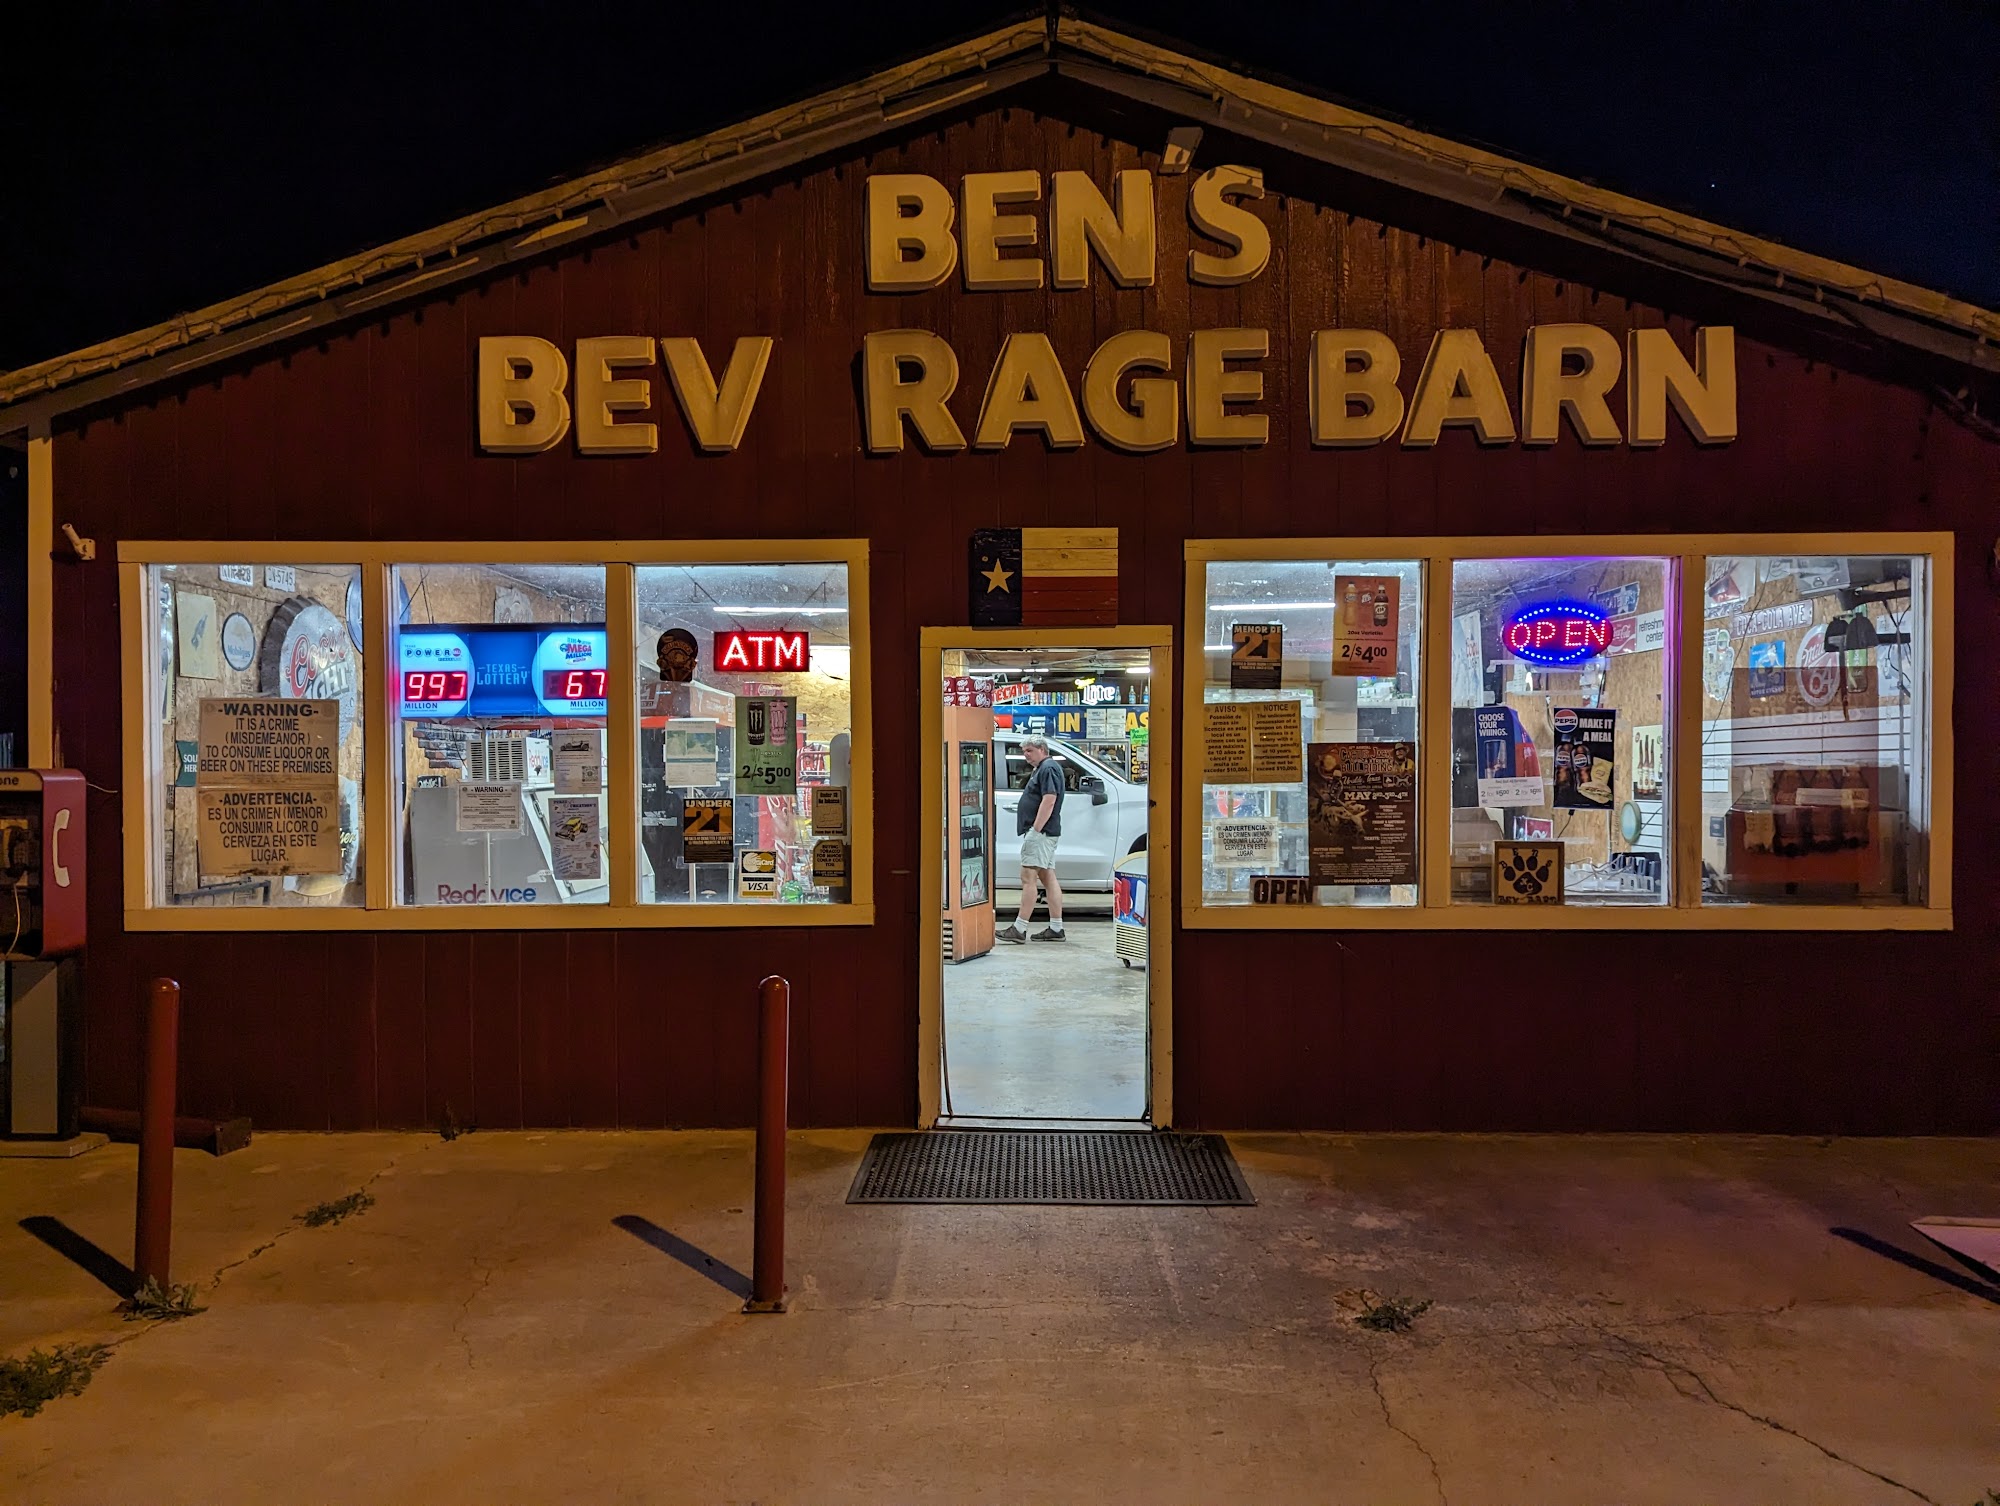 Ben's Beverage Barn